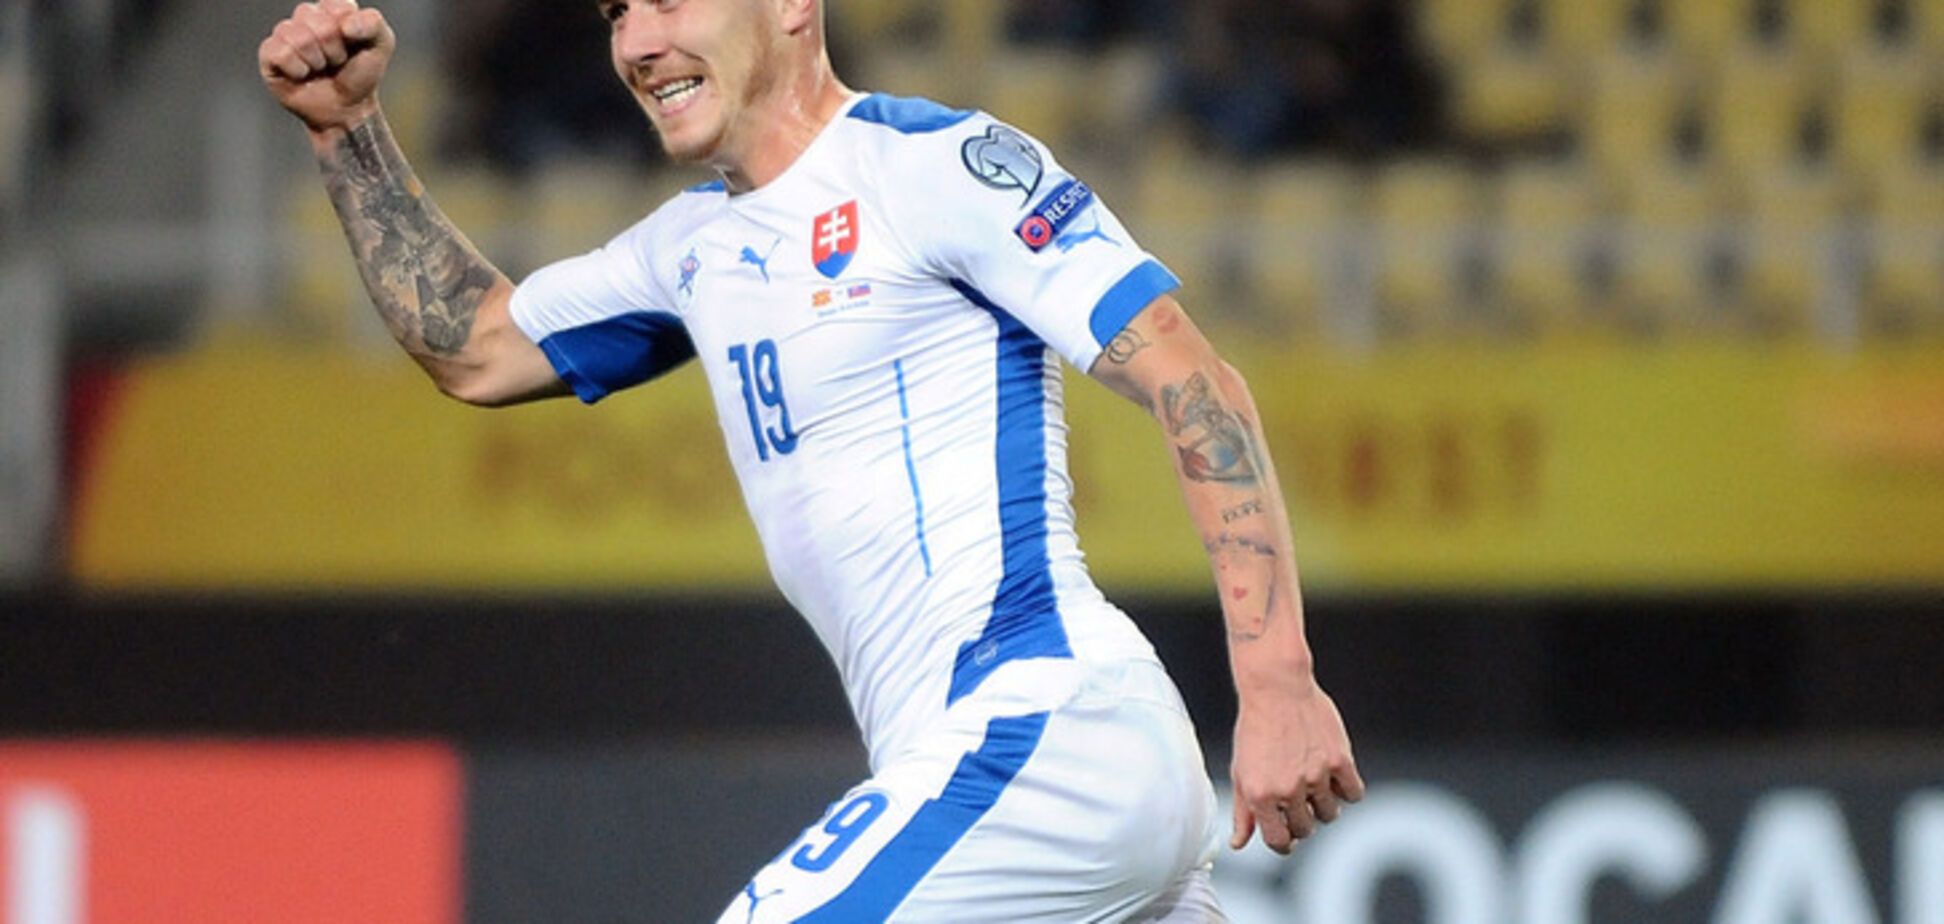 Словацький футболіст забив фантастичний гол з центру поля: опубліковано відео